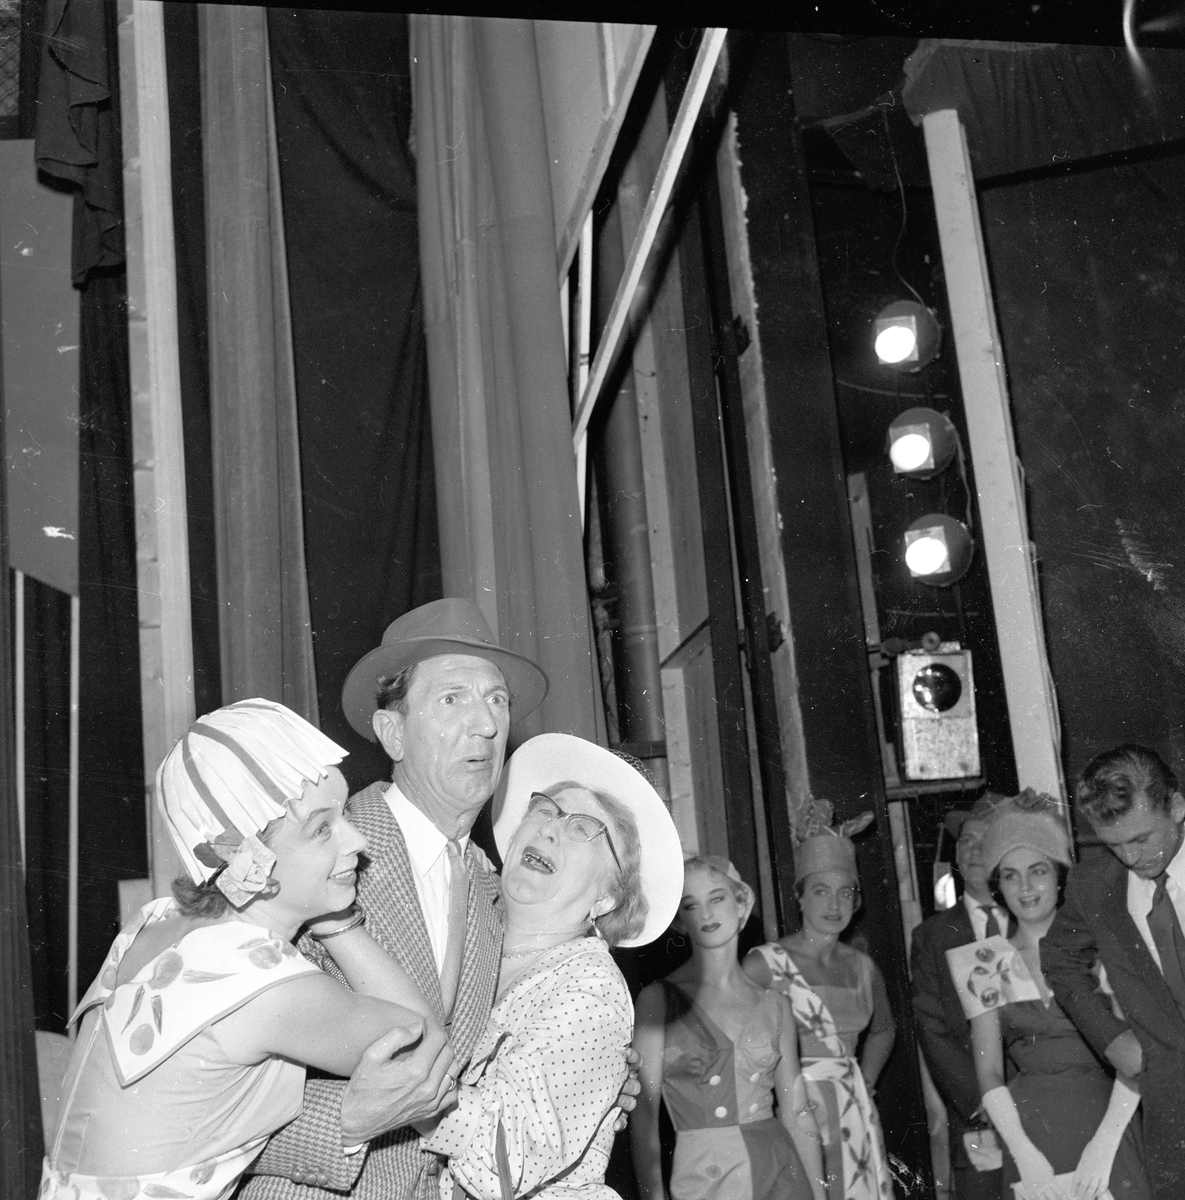 Oslo,  02.09.1958, Leif Juster og to kvinner, Edderkoppen teater.